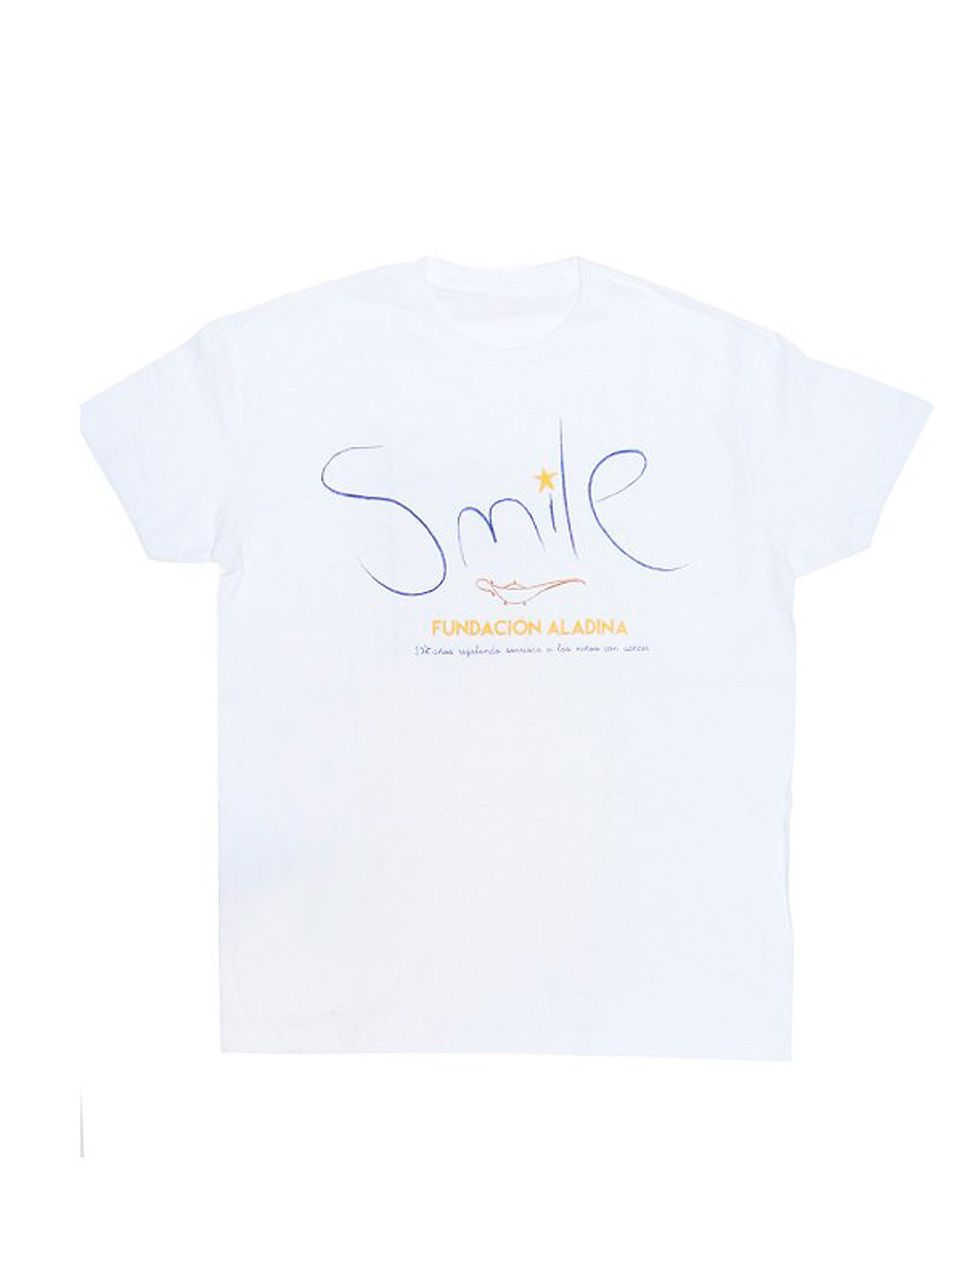 <p>'Smile', dice esta camiseta de la <a href="http://www.latiendadealadina.org/regalos-solidarios-fundacion-aladina/15-camiseta-chico-fundacion-aladina.html" target="_blank">Fundación Aladina</a>&nbsp;(14,90 €) y es lo que conseguirás comprándola, llevar la sonrisa a los niños enfermos de cáncer. Lo recaudado&nbsp;va directo a los diferentes proyectos de la fundación.</p>